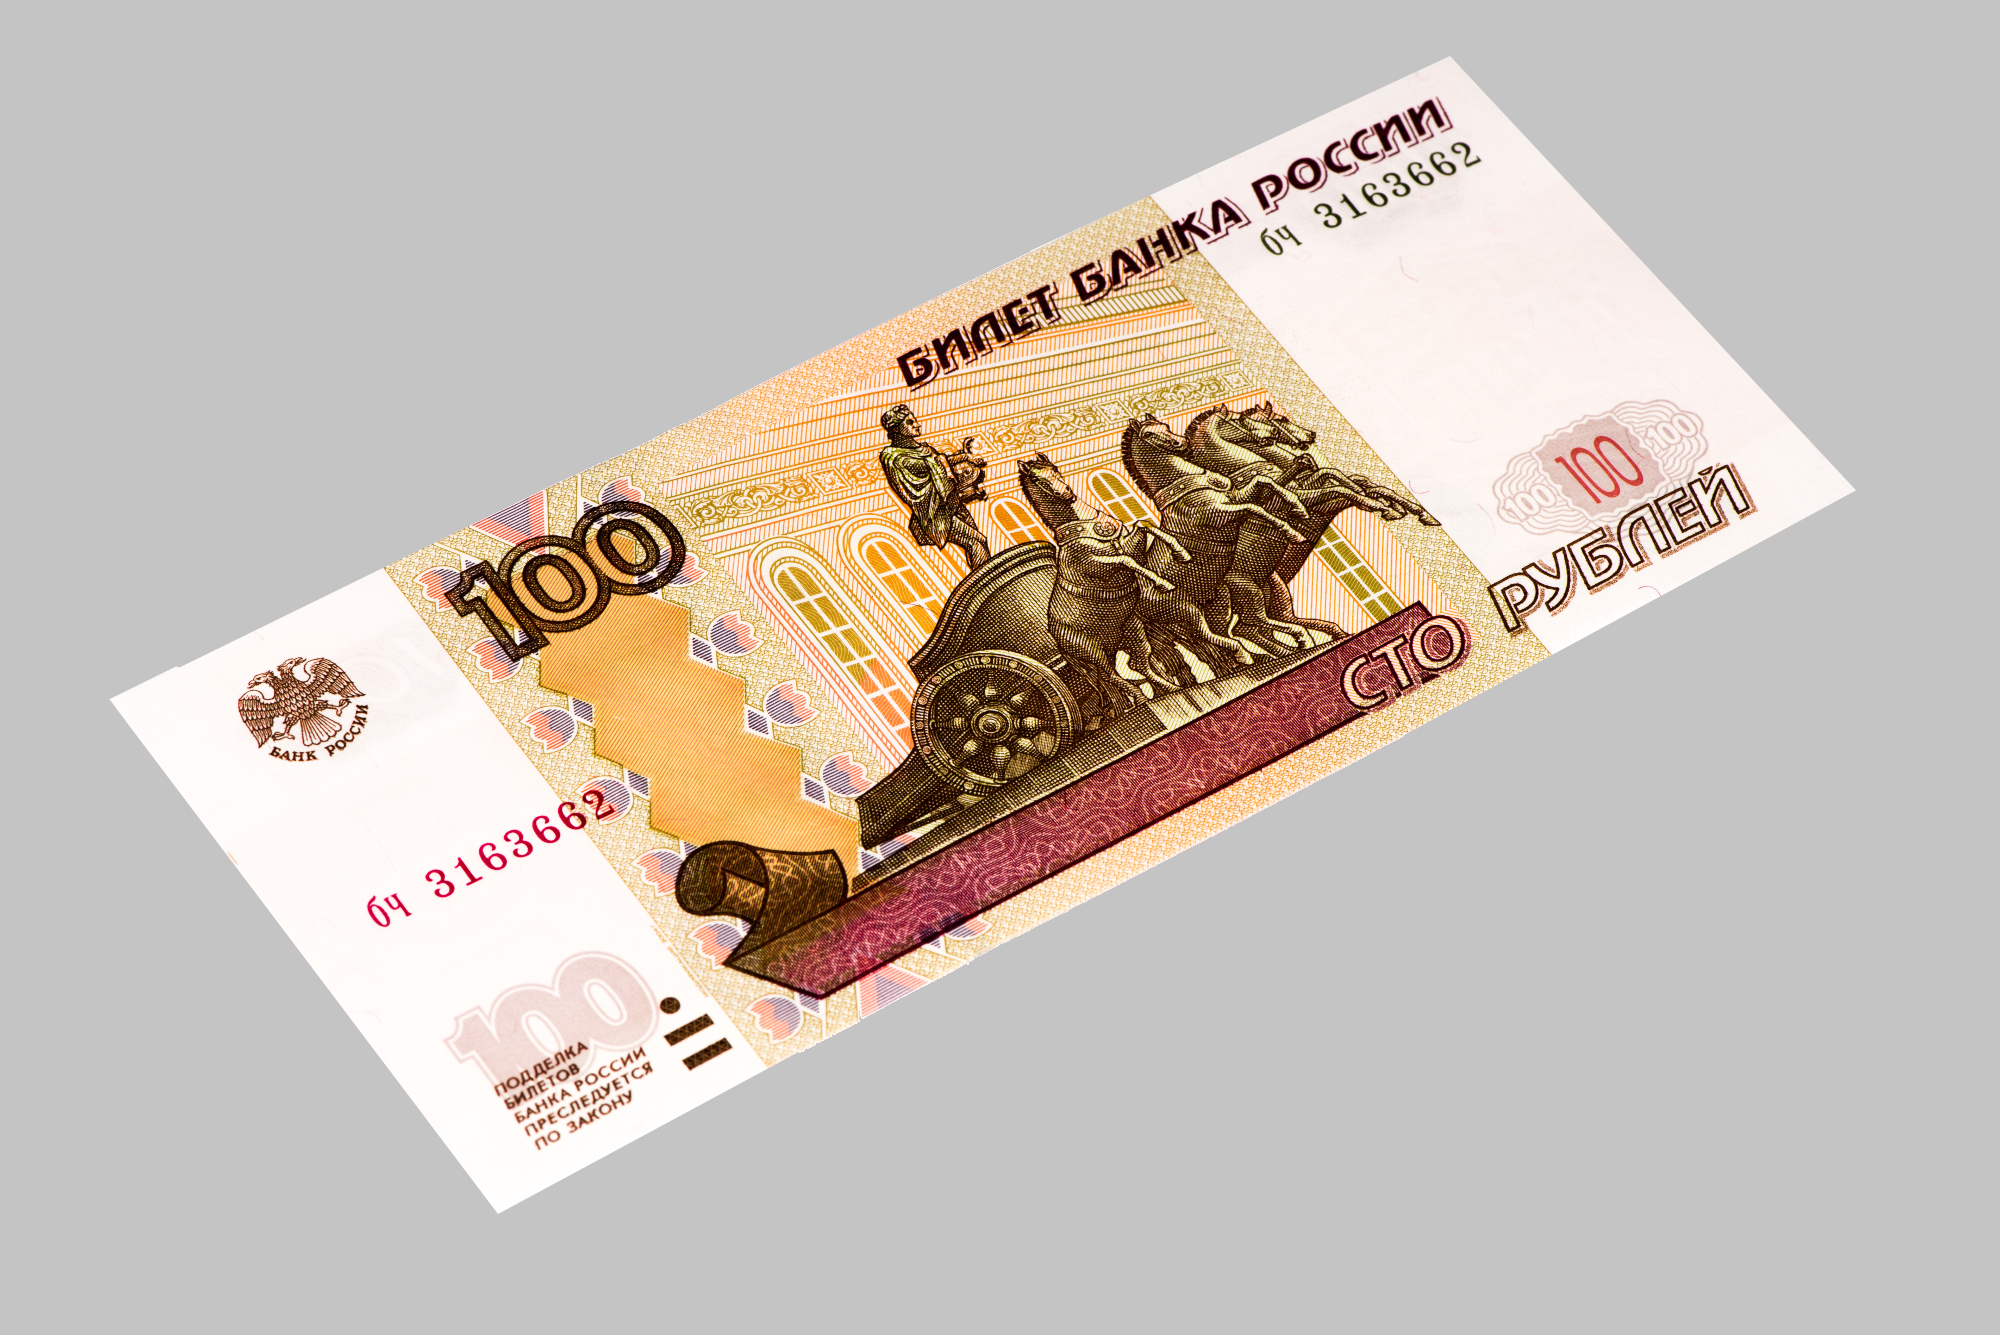 Имя сотка. 100 Рублей. Купюра 100 рублей. Банкнота 100 рублей. СТО рублей купюра.